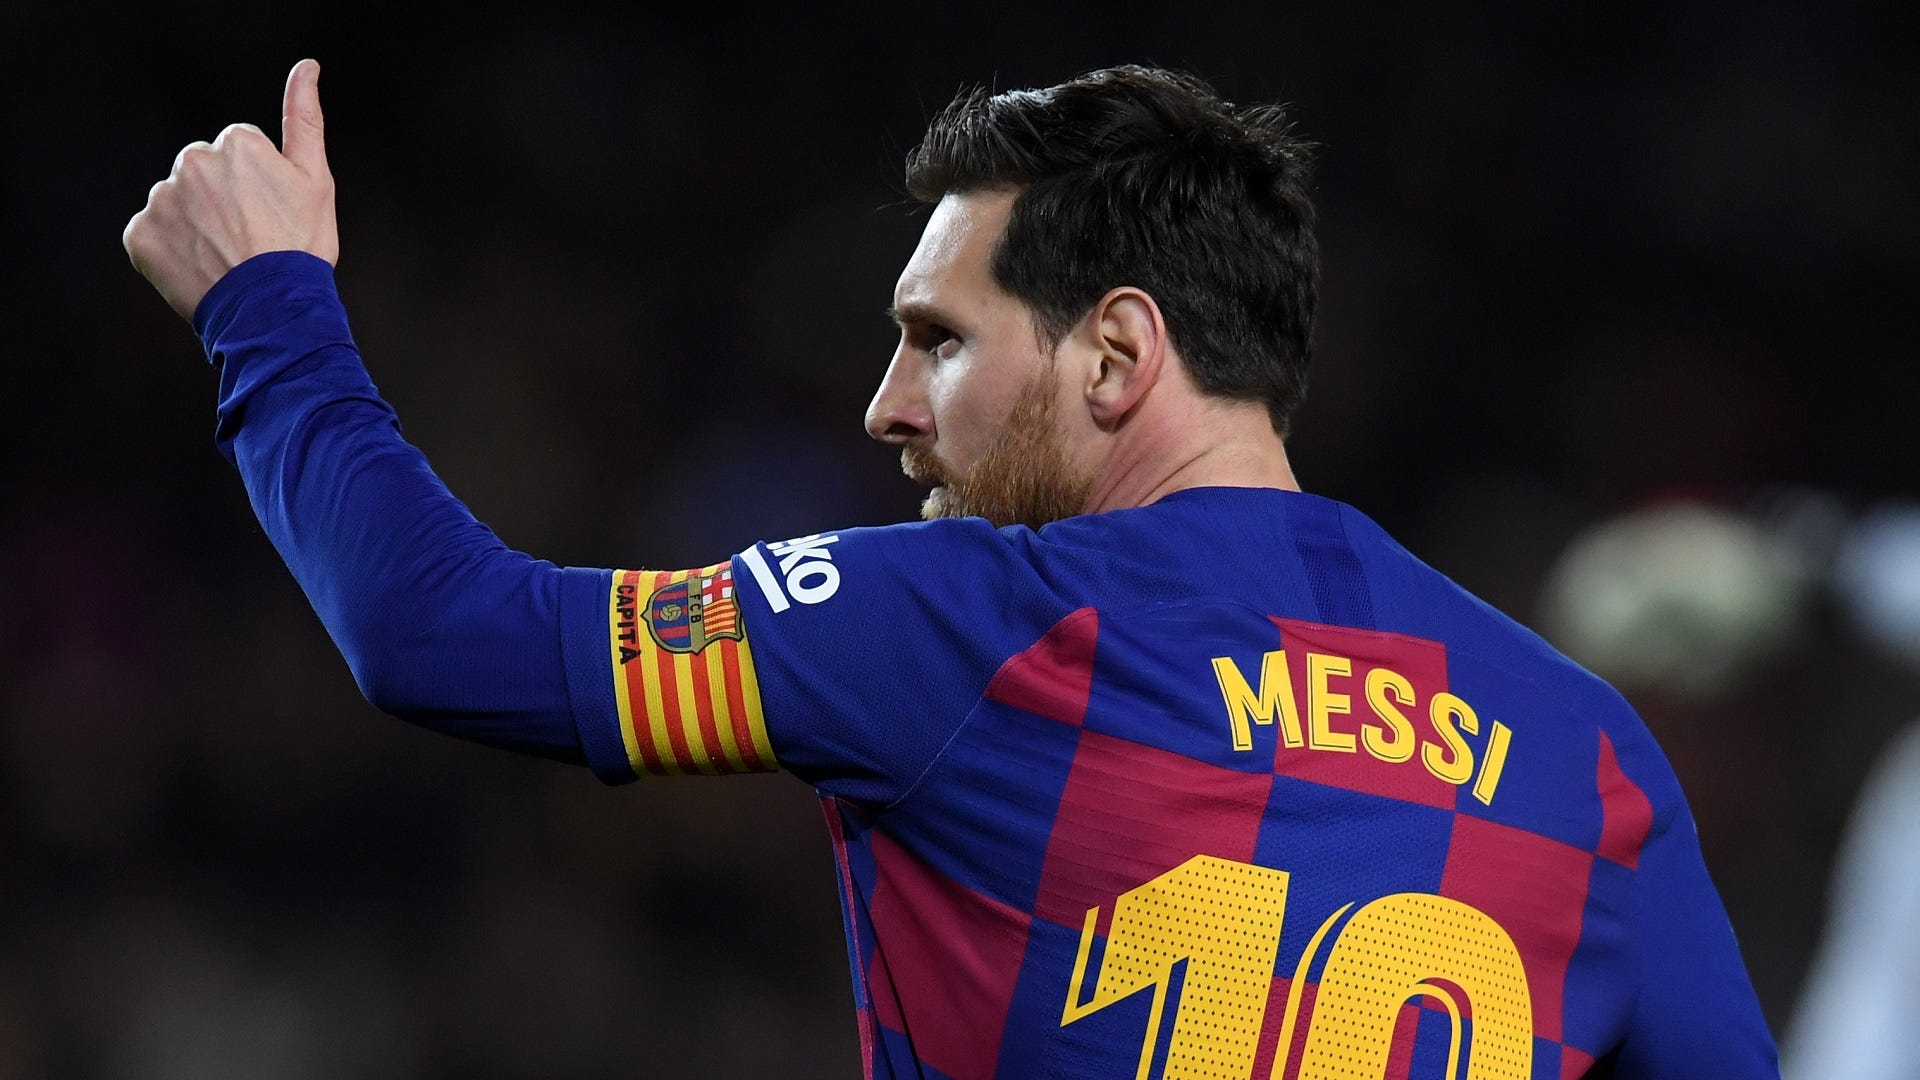 Tưởng tượng về sự phối hợp tuyệt vời giữa Lionel Messi và cựu HLV Barcelona Pep Guardiola thông qua những hình ảnh chất lượng cao.